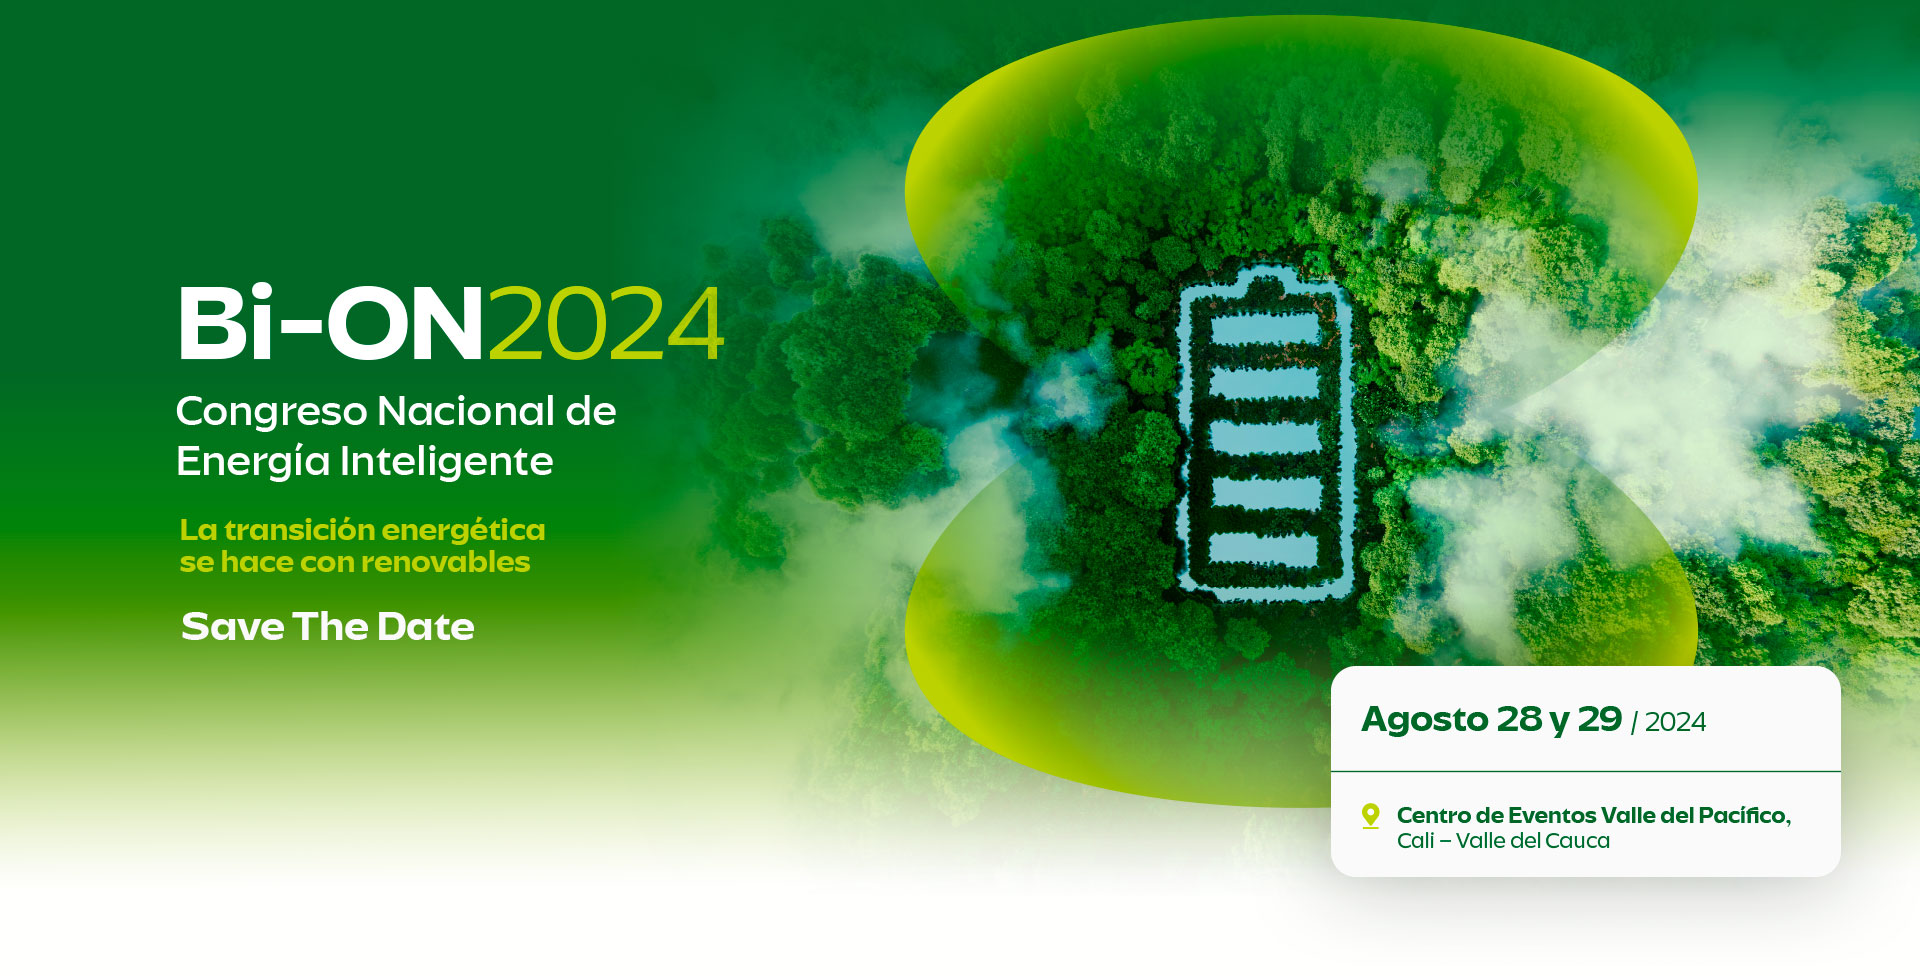 Bi-ON 2022 Congreso Nacional de energía inteligente La energia se renueva agosto 31 y septiembre 1 de 2022 centro de eventos valle del pacífico cali colombia